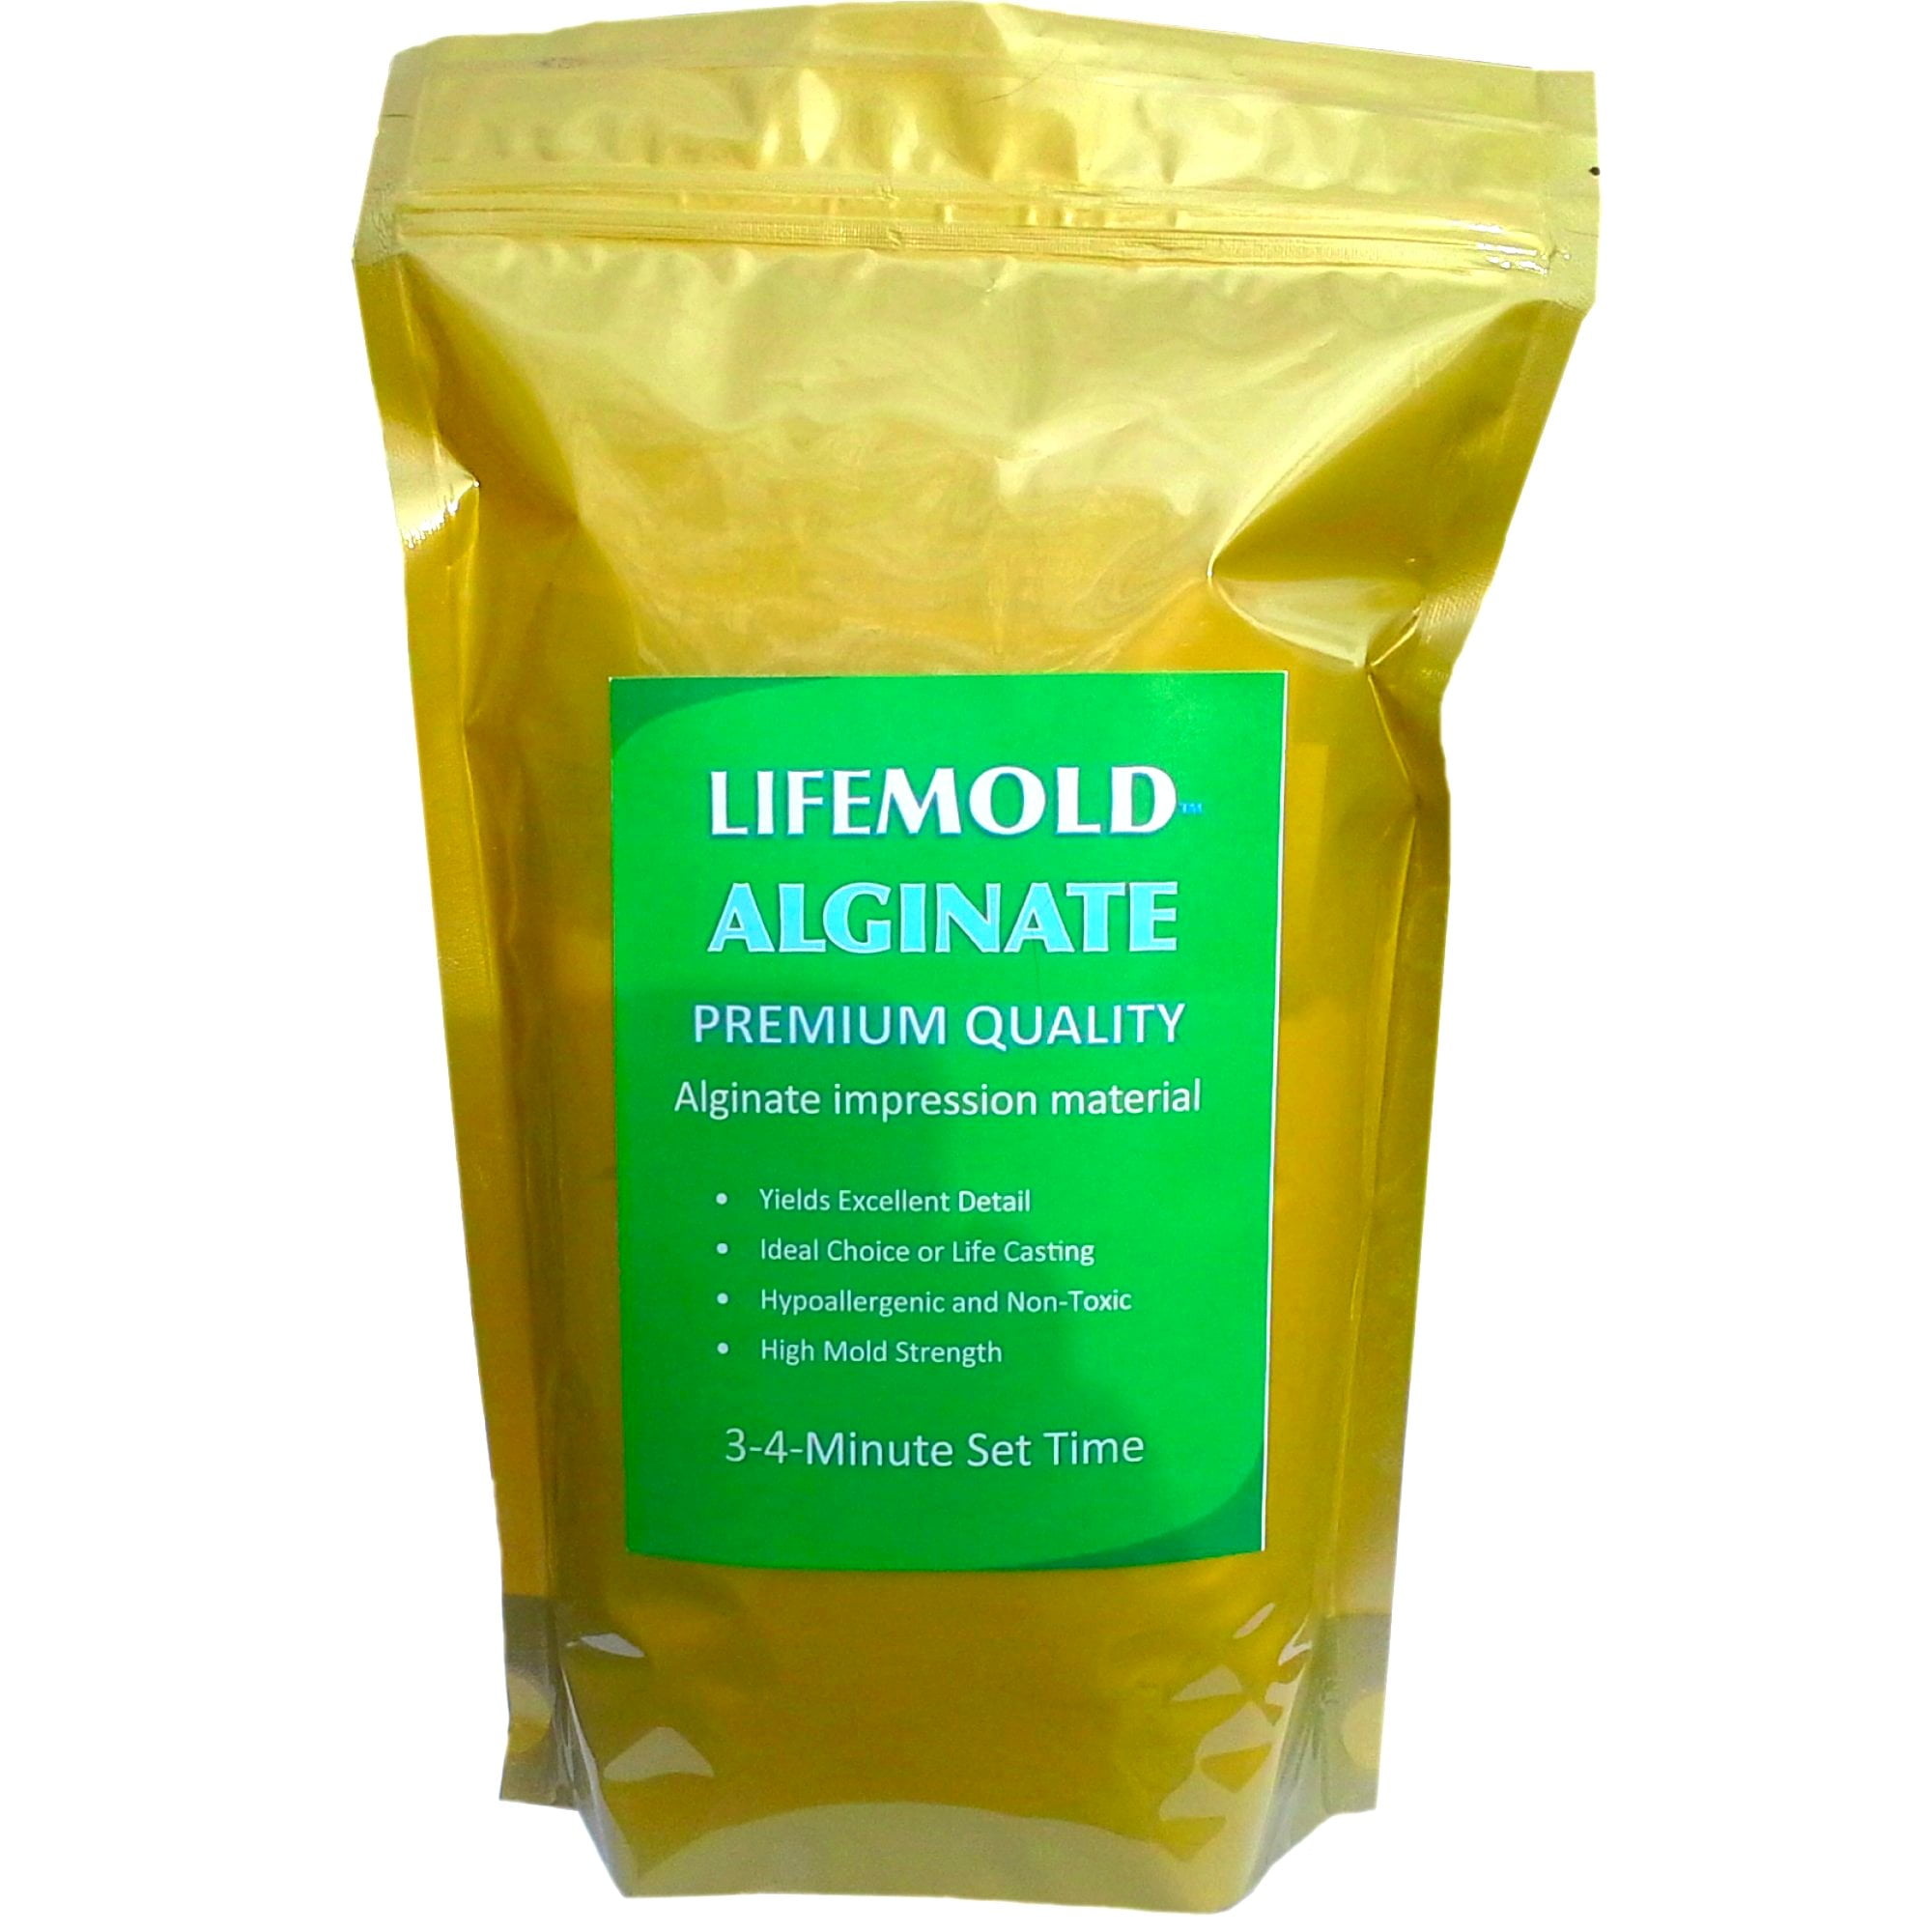 Best Uses of Alginate Impression Materials in Lifecasting